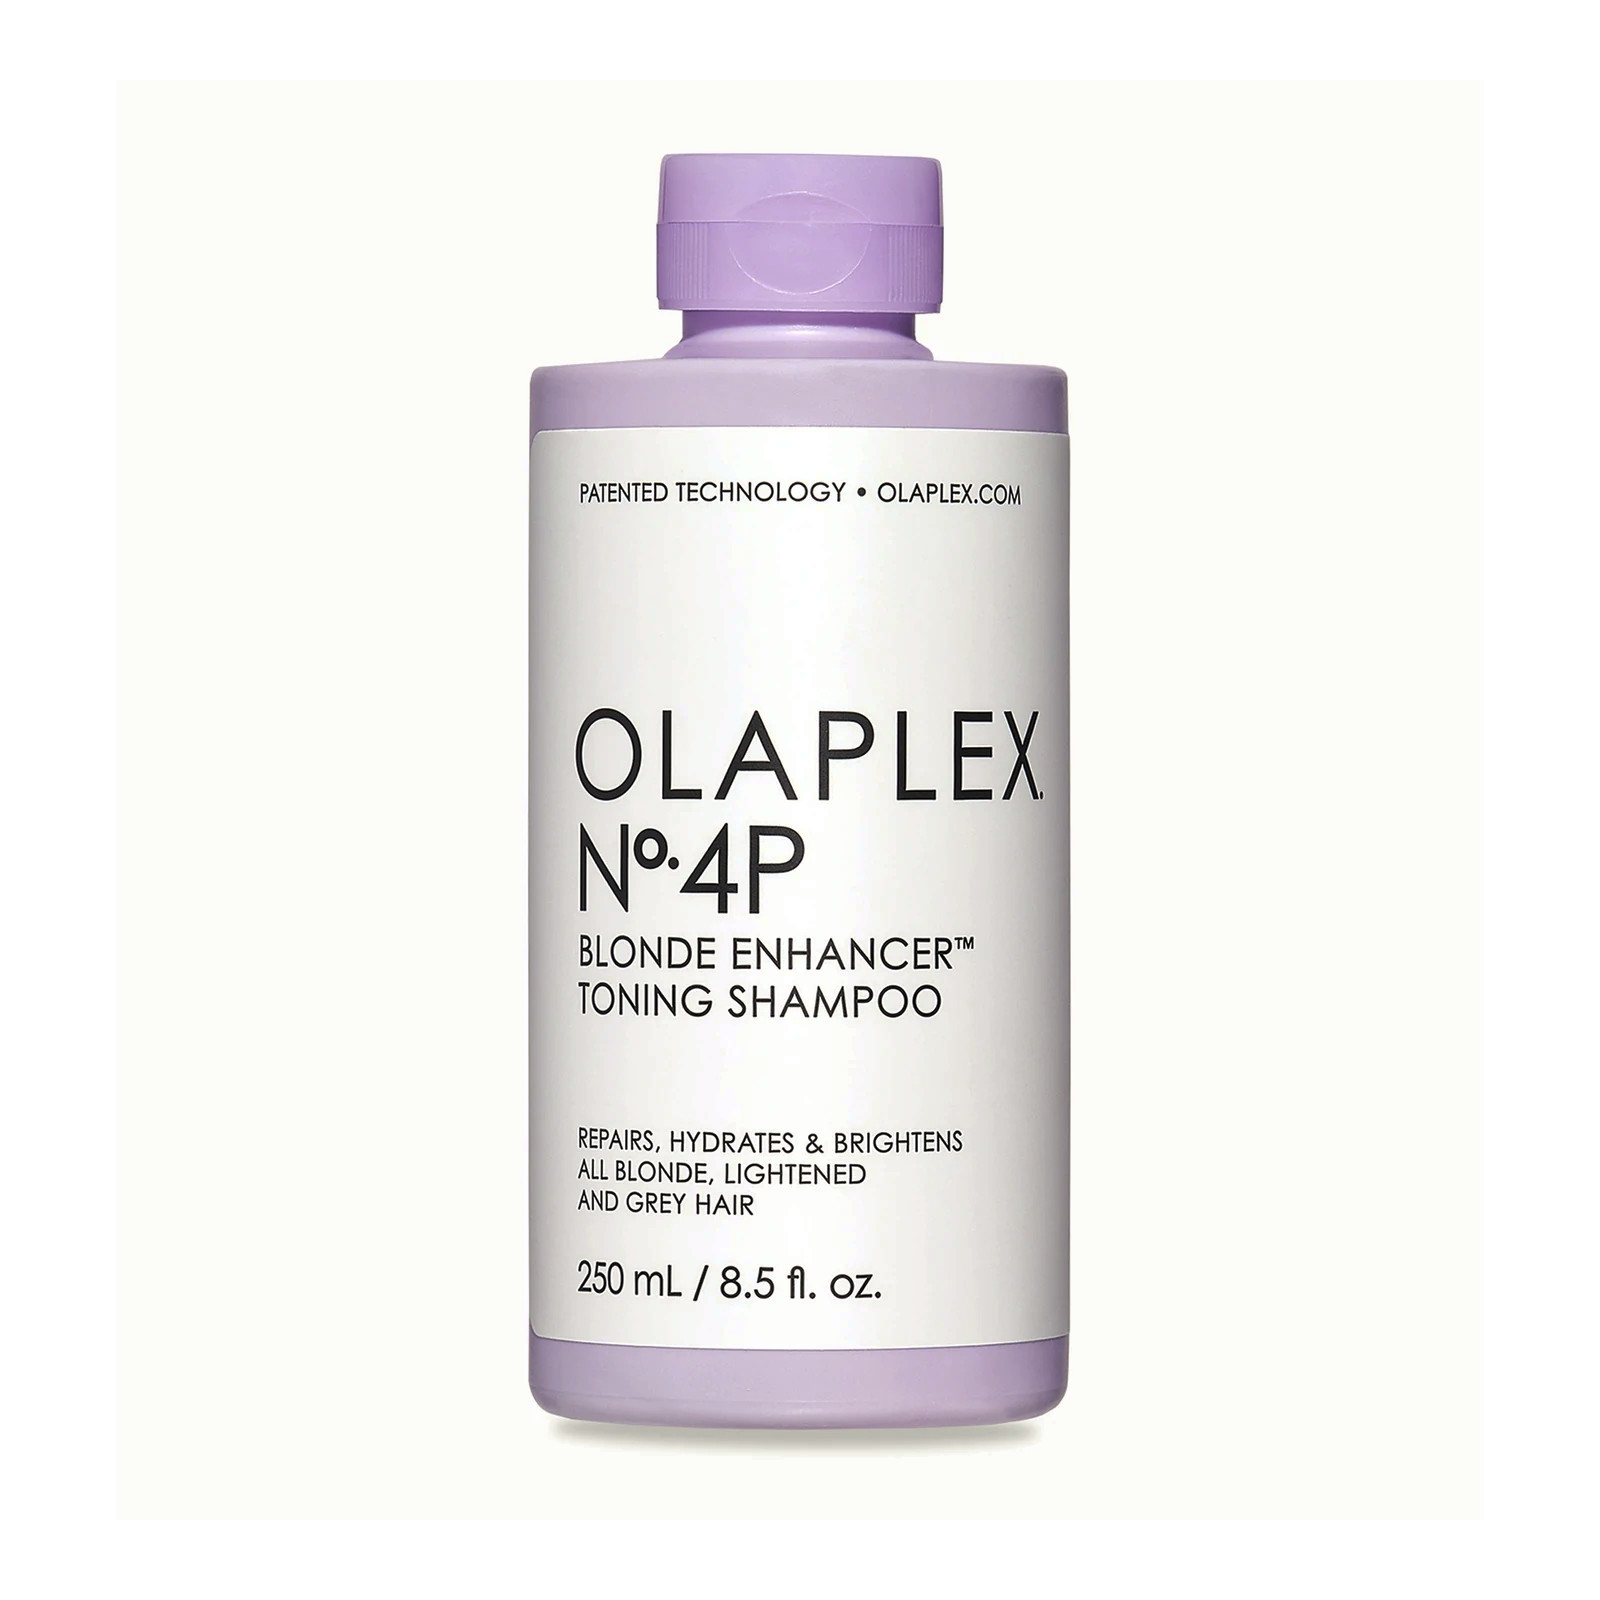 Olaplex No.4p Blonde Enhancer Toning Shampoo